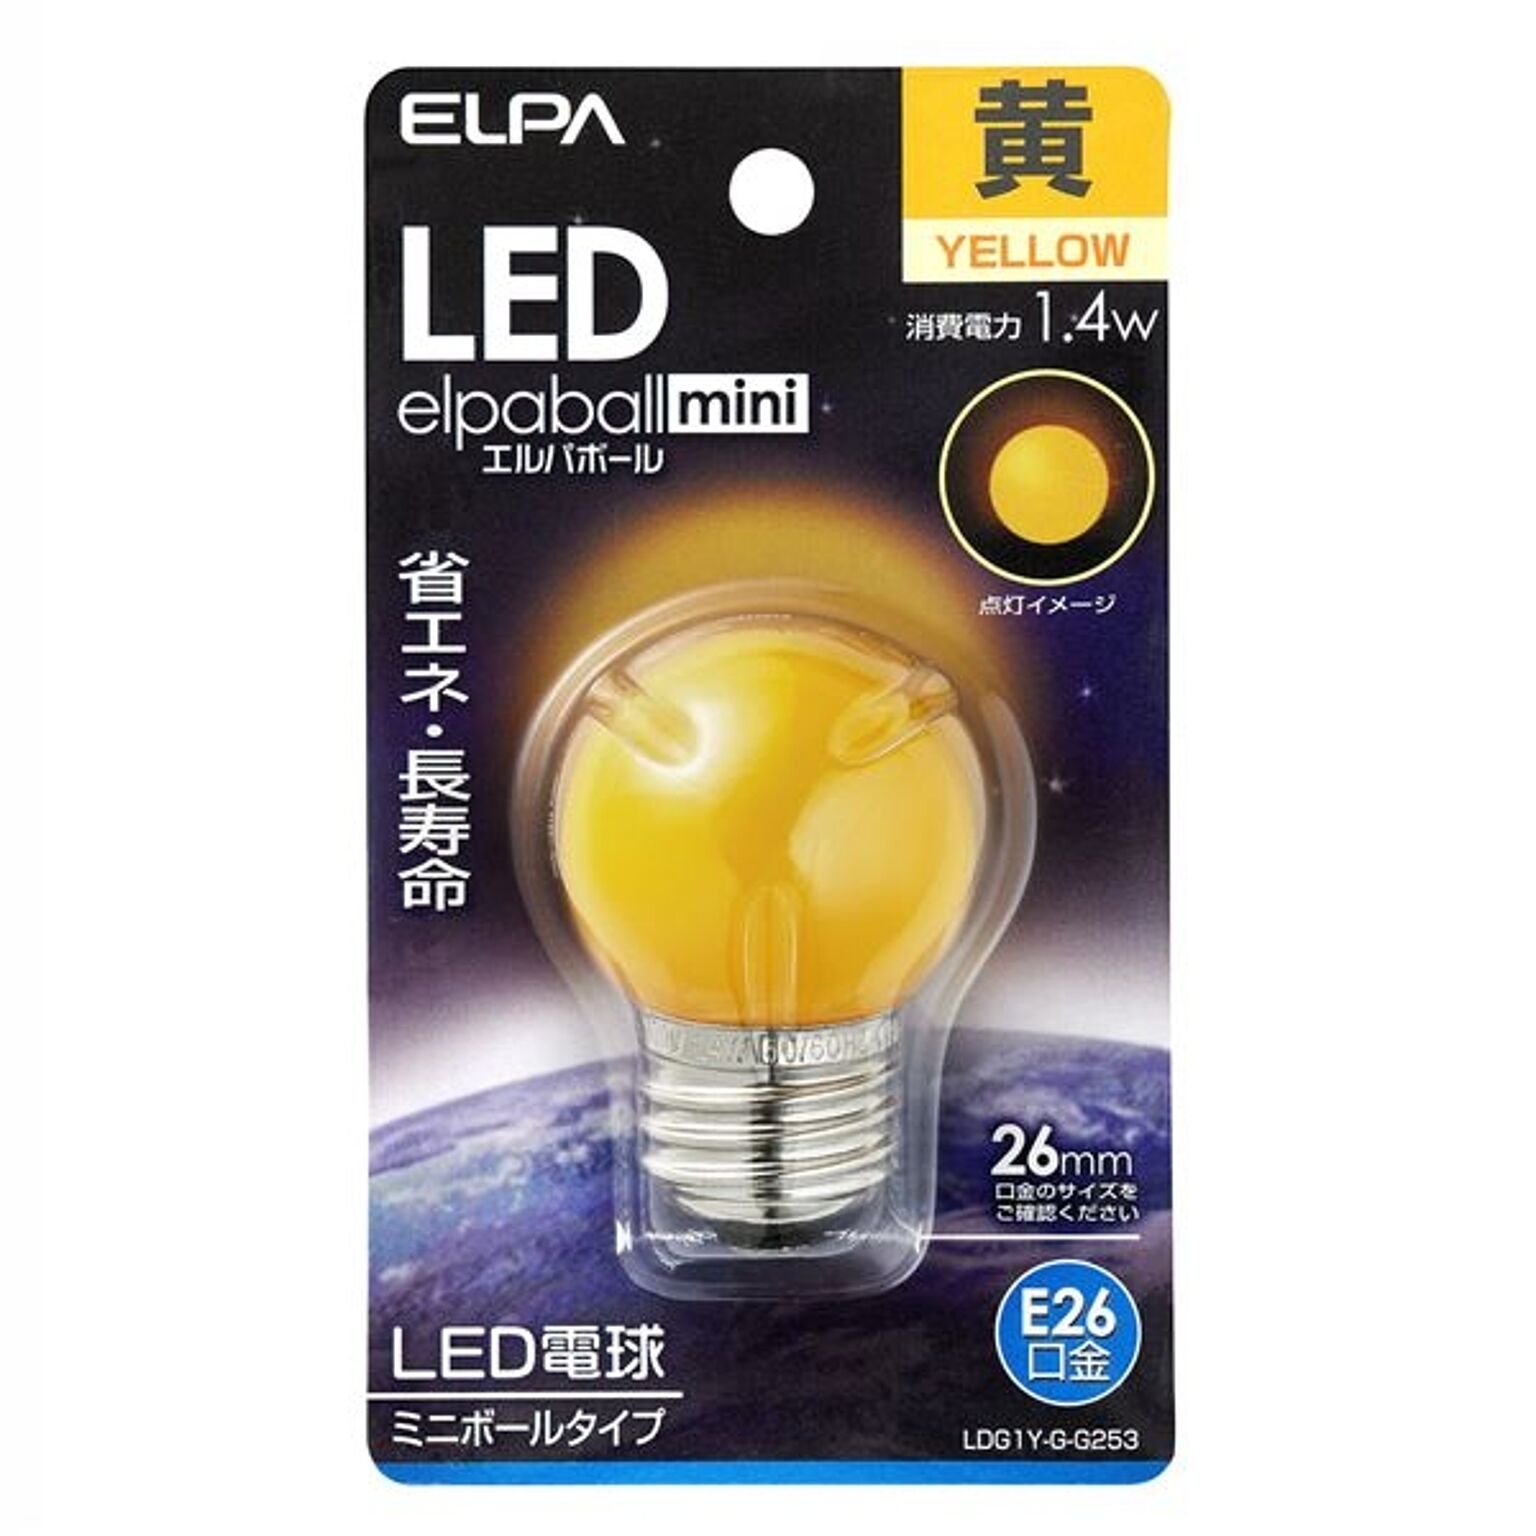 （まとめ） ELPA LED装飾電球 ミニボール球形 E26 G40 イエロー LDG1Y-G-G253 【×5セット】